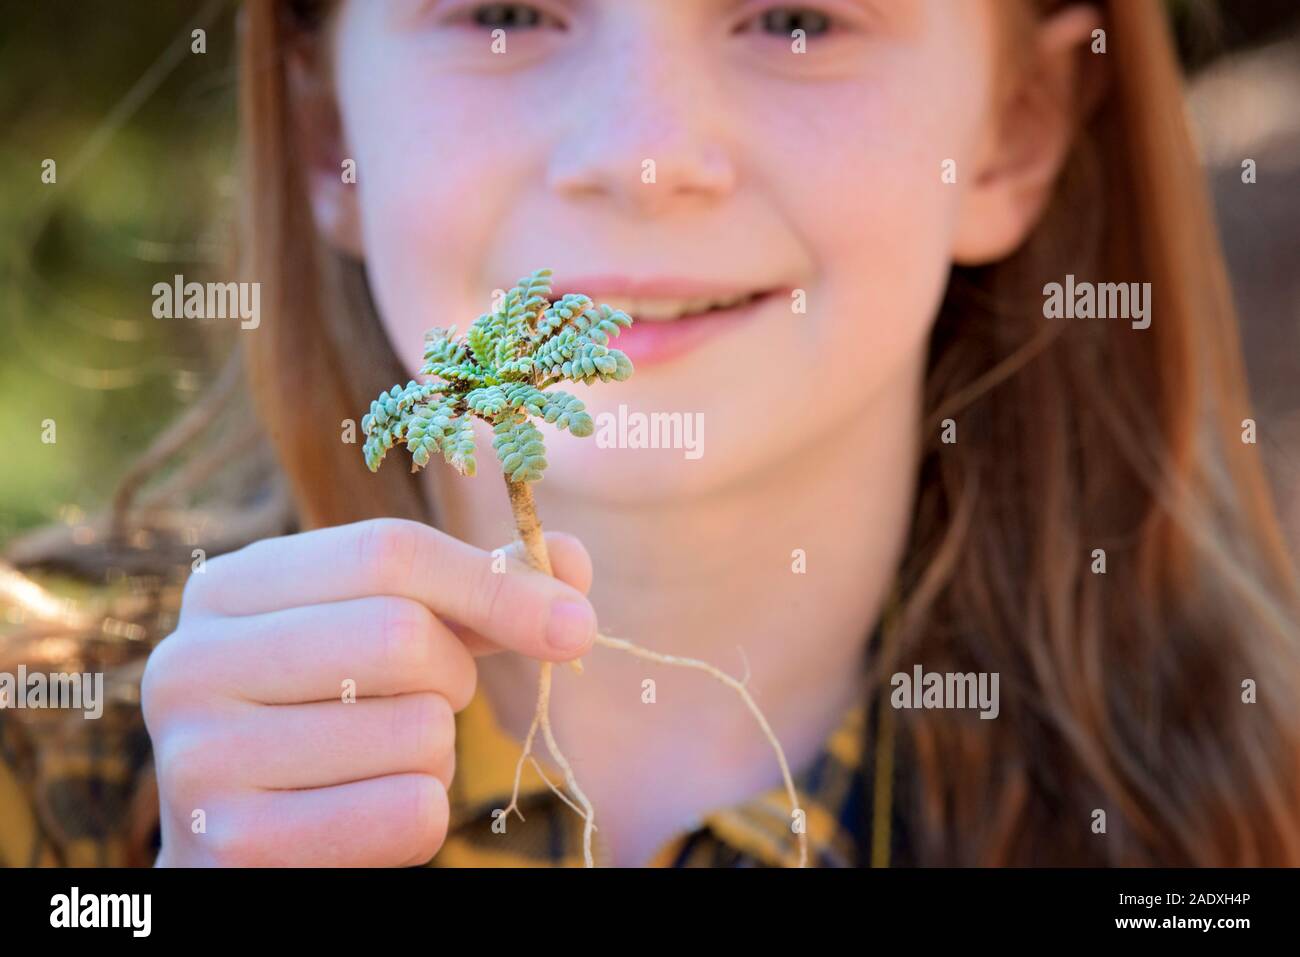 Junge Mädchen, dass kleine grüne Pflanze mit Wurzeln Stockfoto